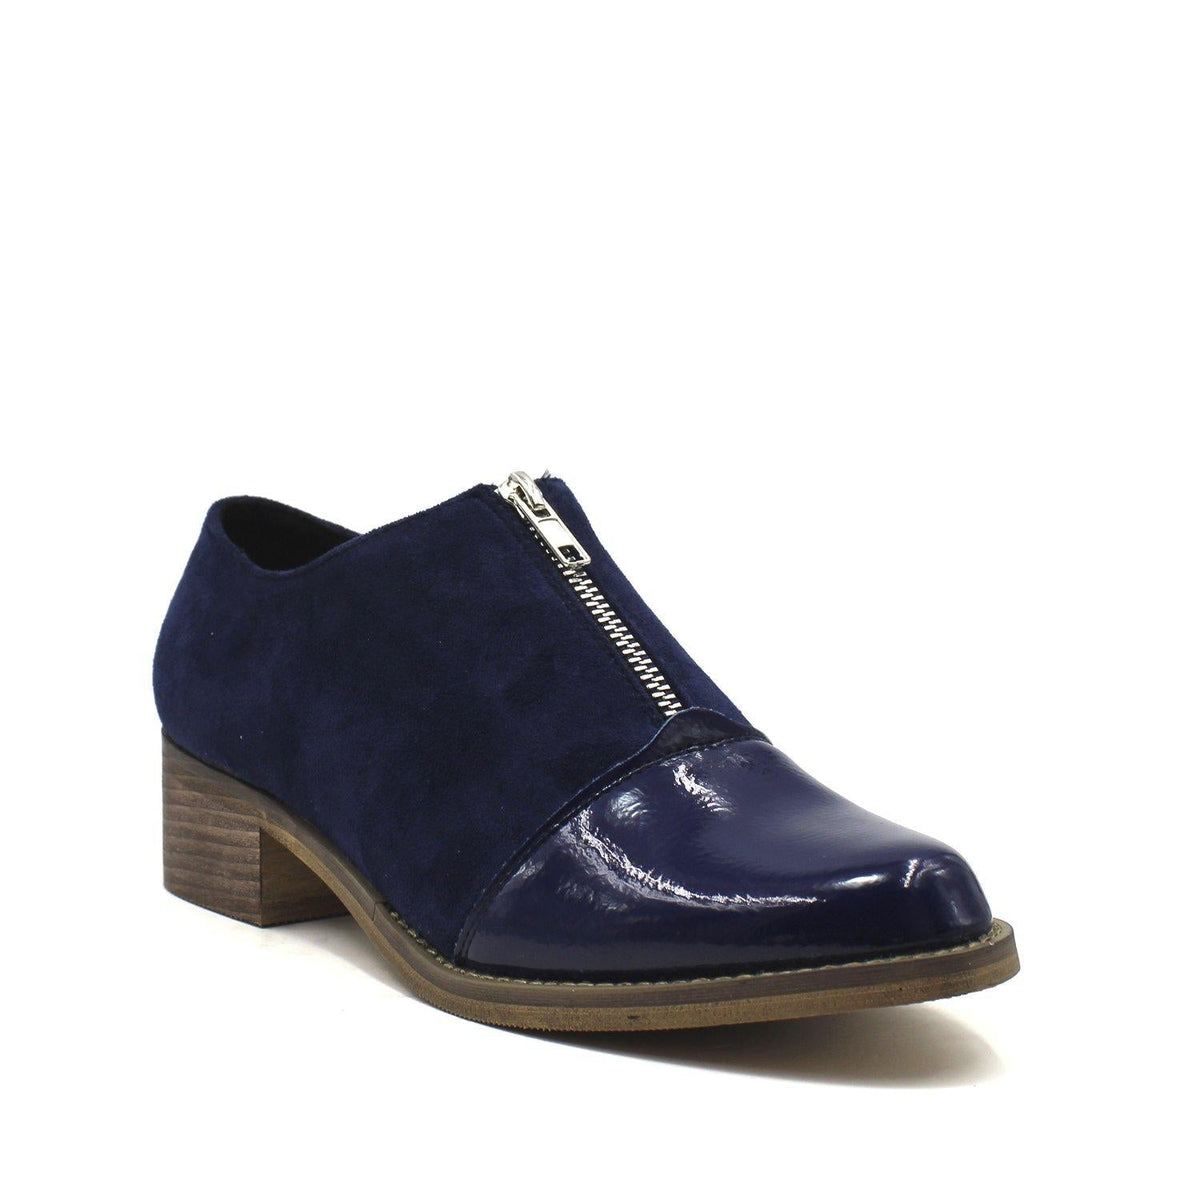 Zapato Charol Azul Mujer 87159 - Gotta Mexico